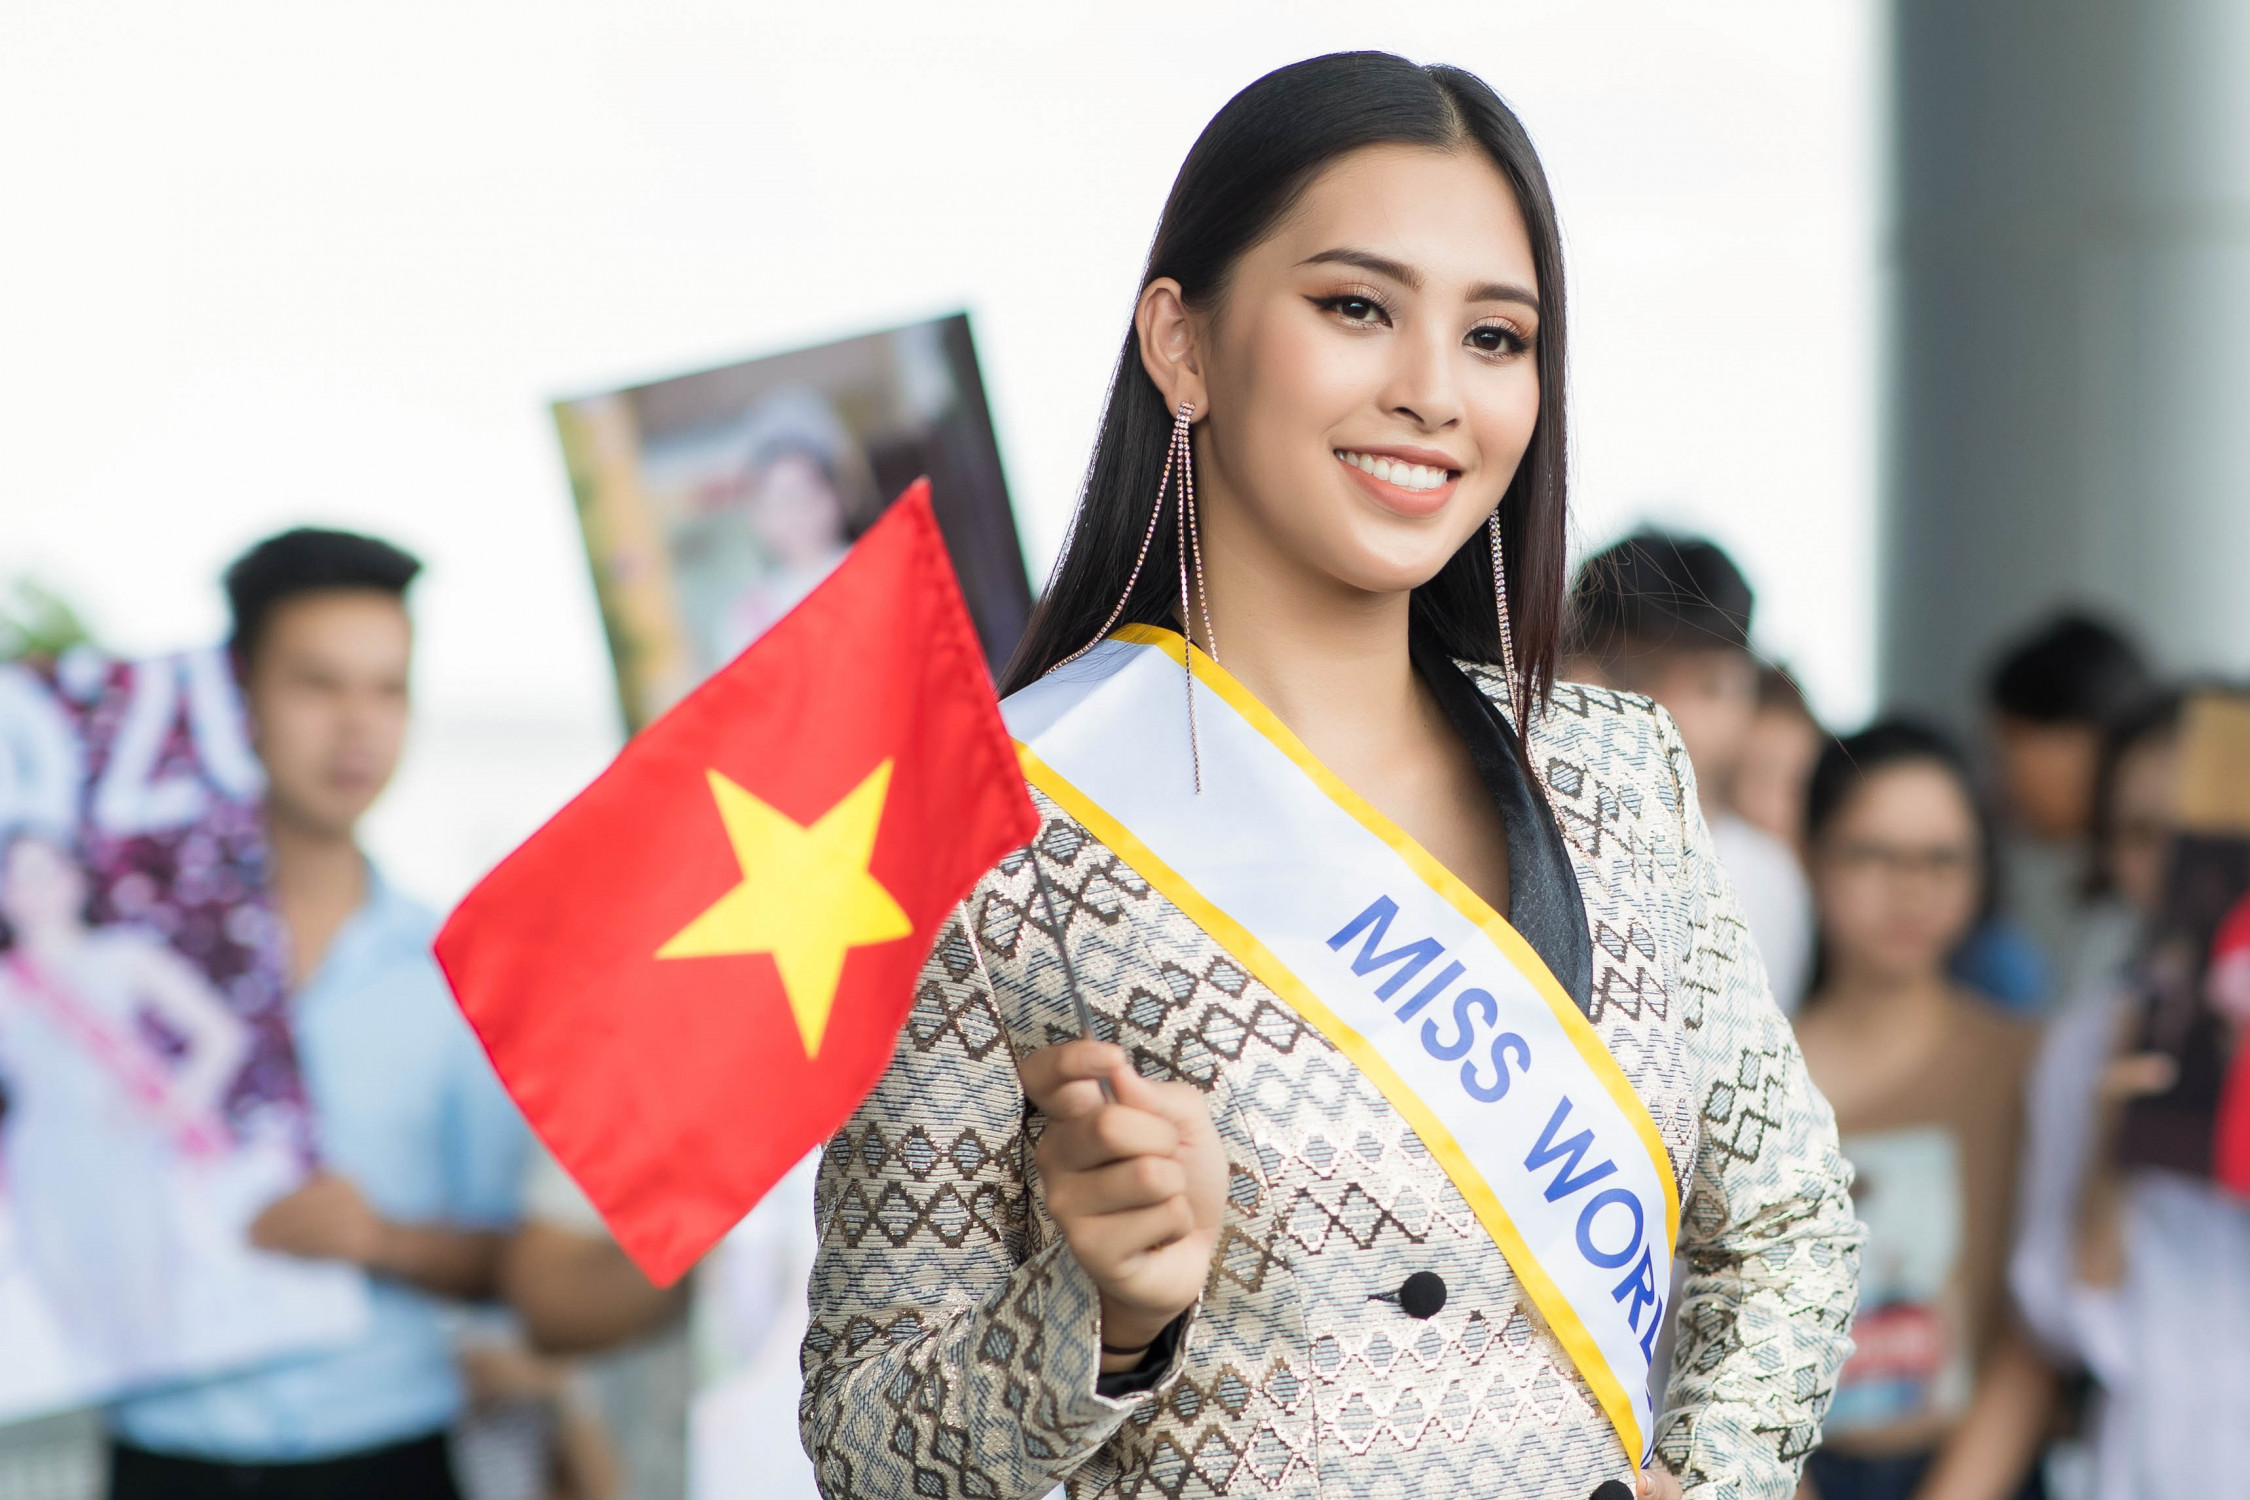 Tối 8/12, Trần Tiểu Vy lọt vào Top 5 Hoa hậu Nhân ái và Top 30 thí sinh xuất sắc nhất tại cuộc thi Hoa hậu Thế giới - Miss World 2018 diễn ra ở Hải Nam, Trung Quốc.